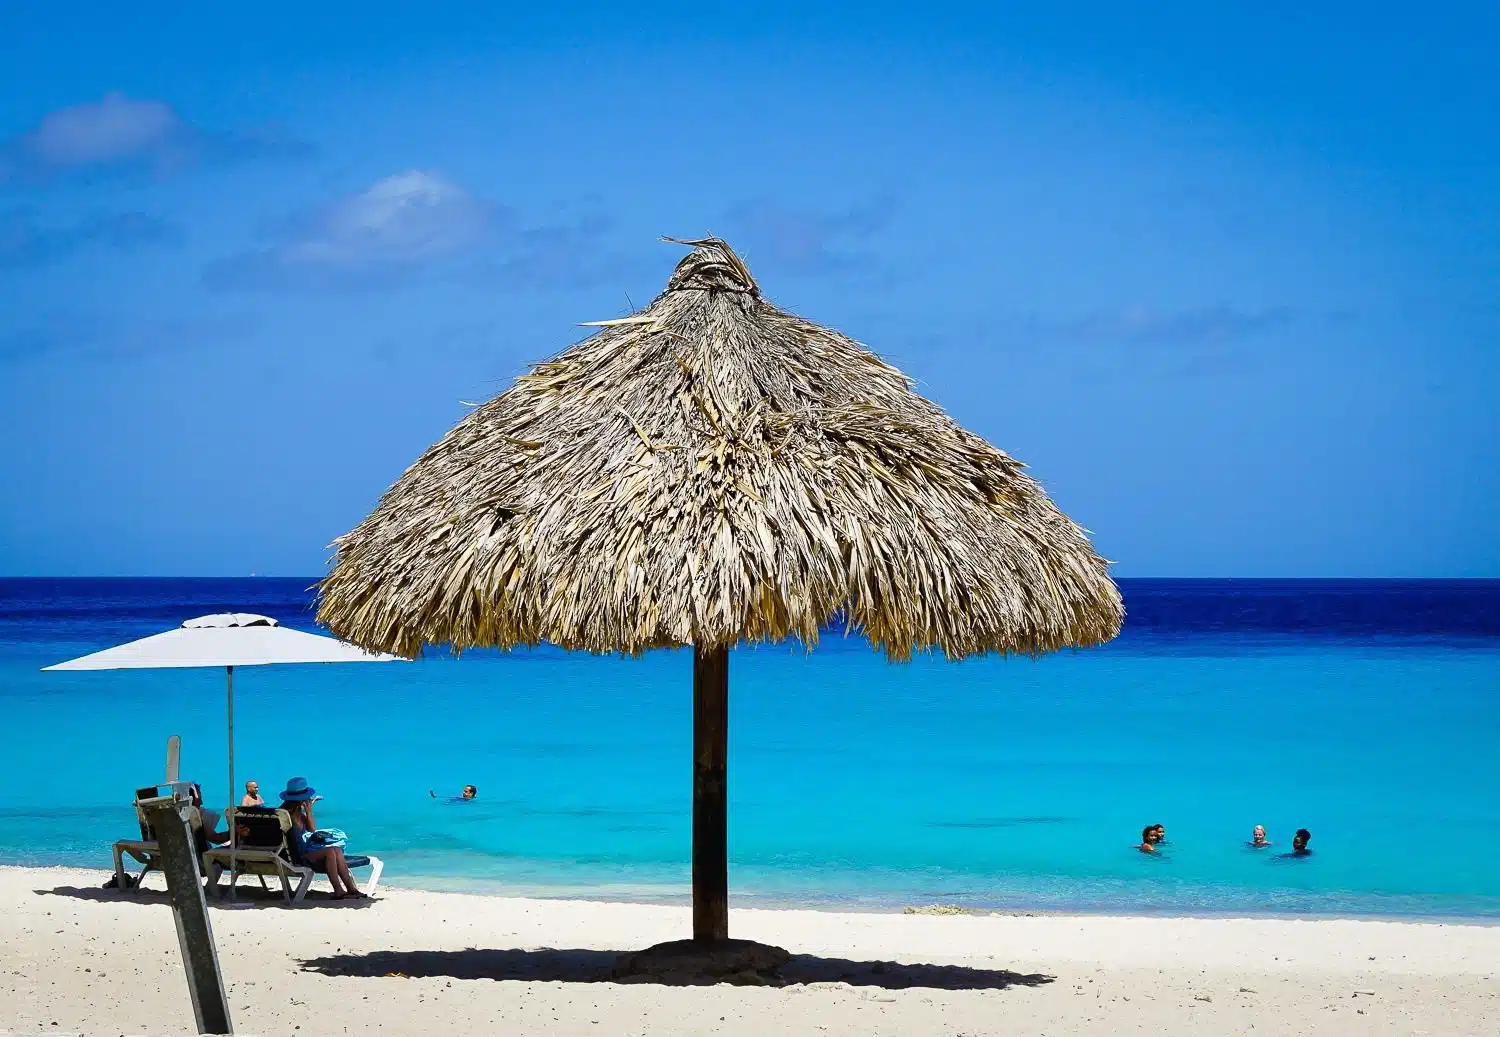 Does Curaçao seem like a spot you'd like to spend time?